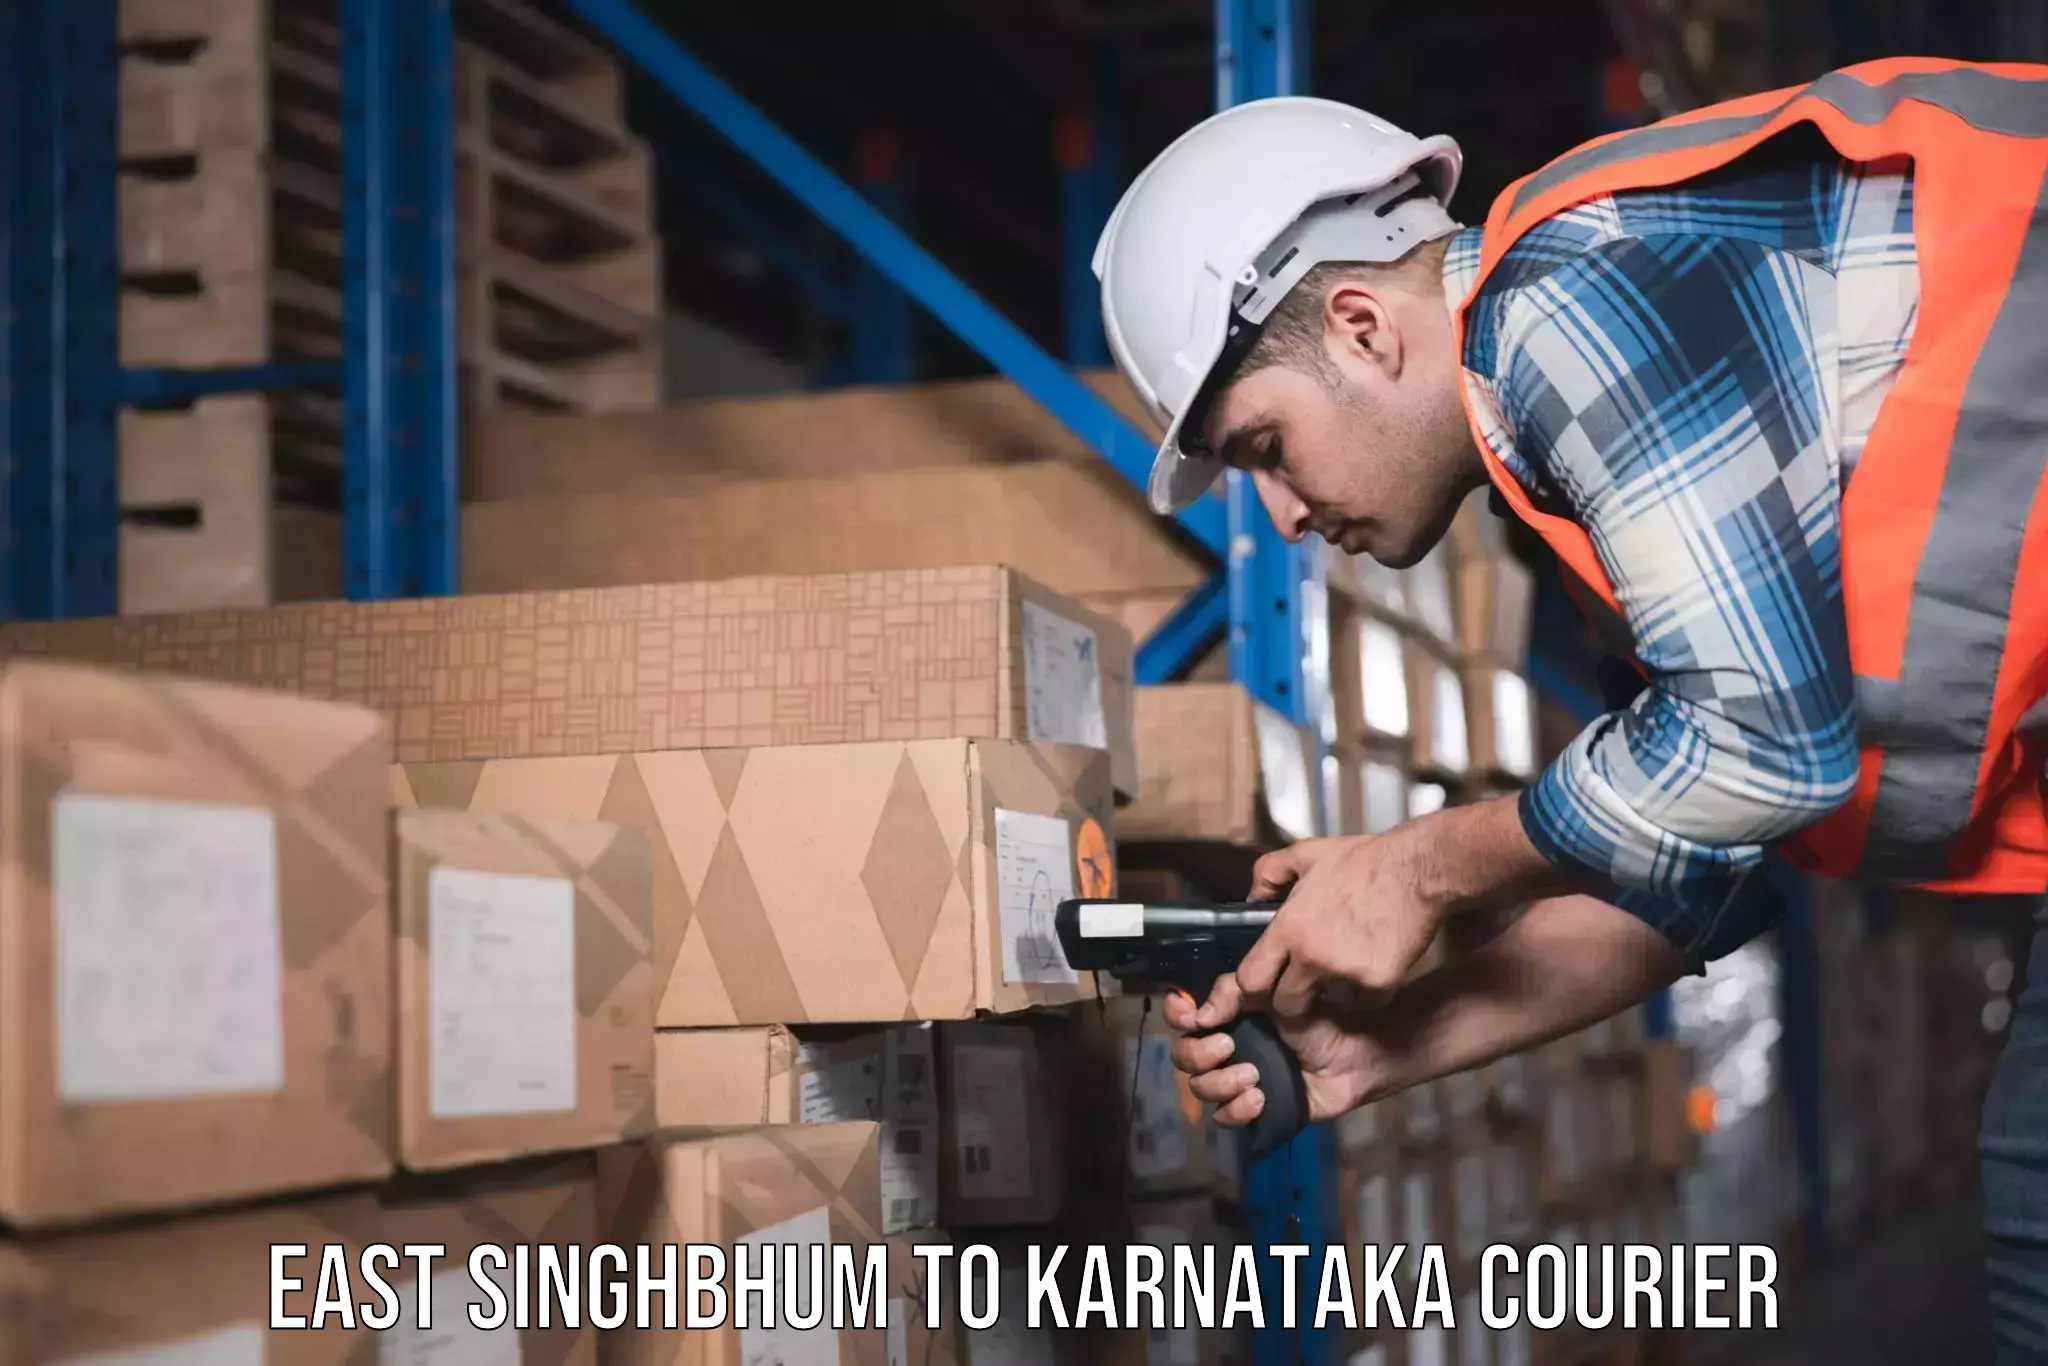 Furniture moving experts East Singhbhum to Karnataka